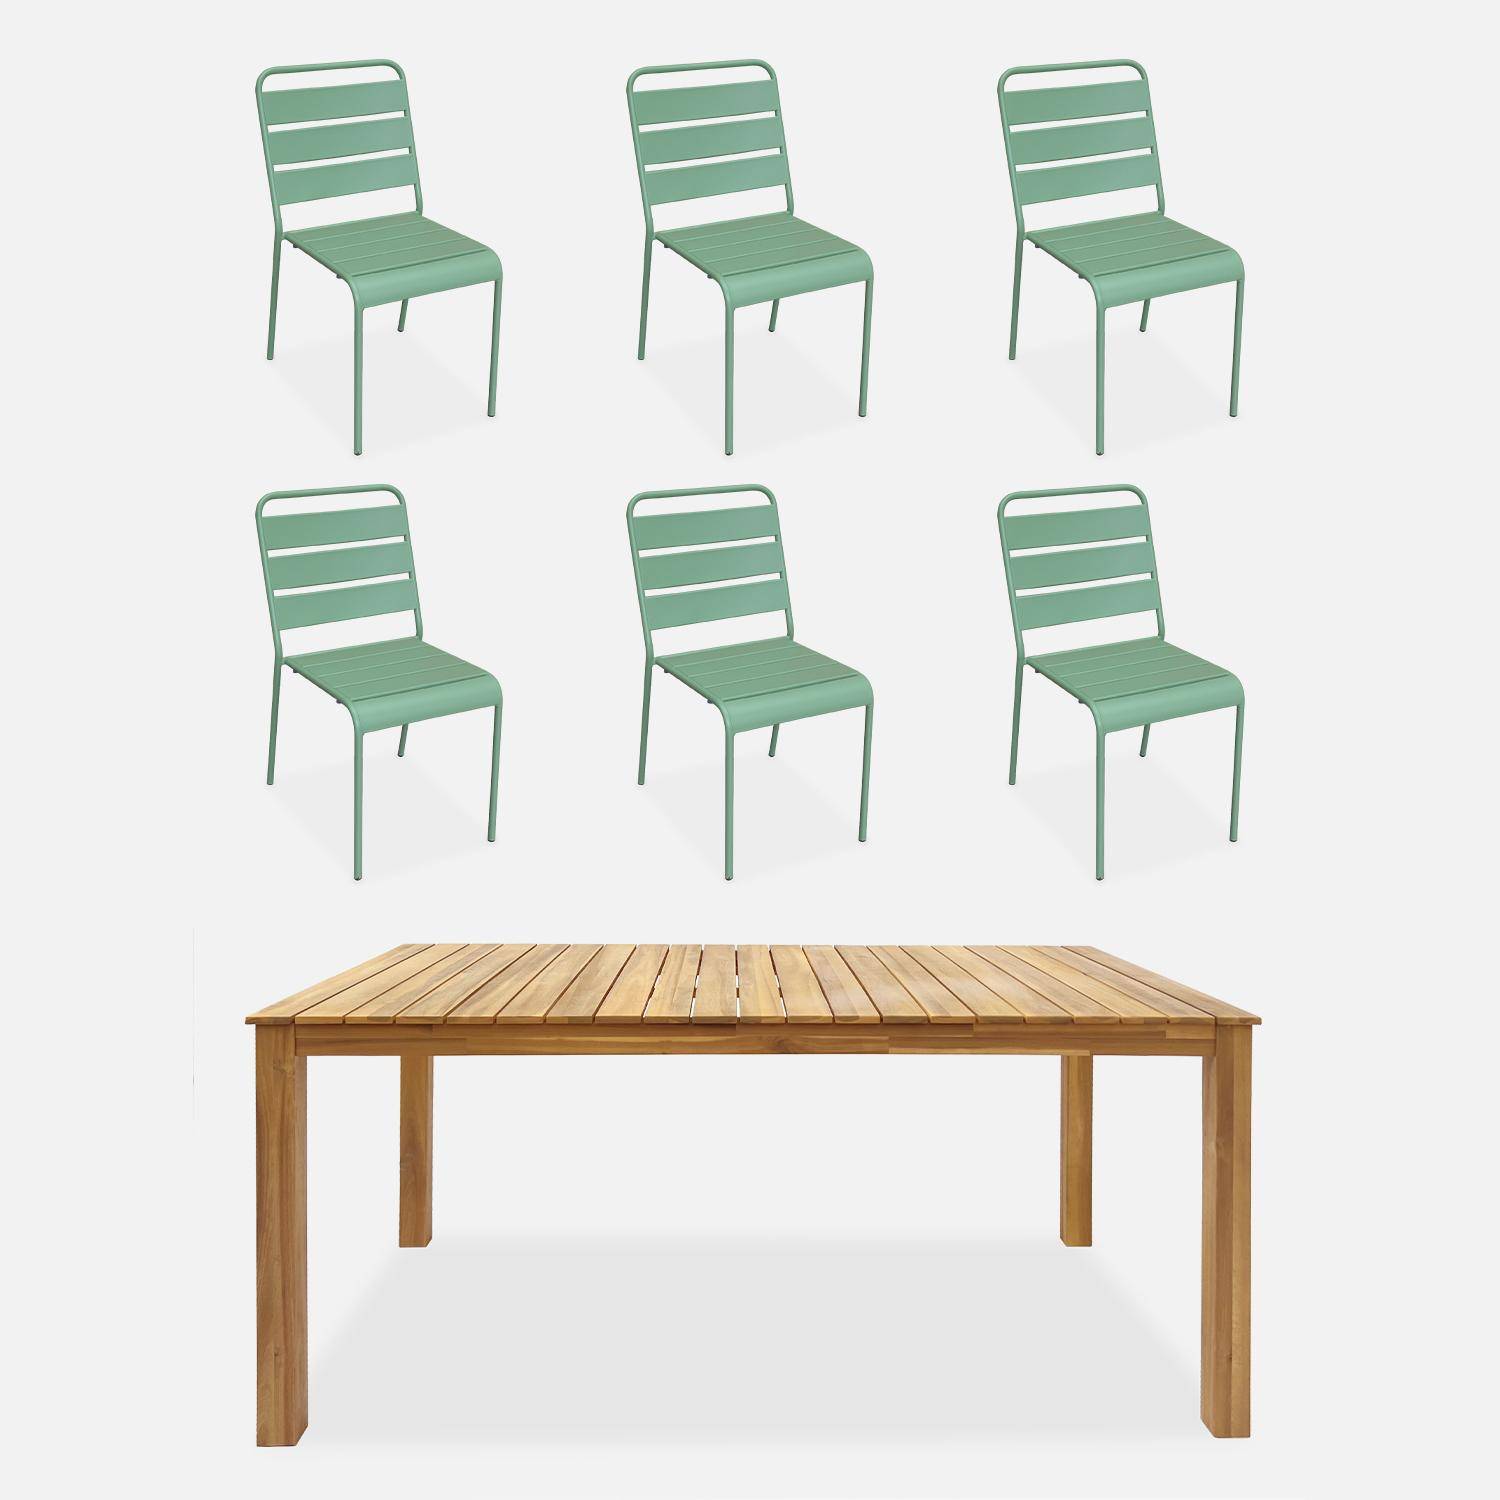 Table intérieur / extérieur bois d'acacia + 6 chaises empilables en métal vert jade Photo1